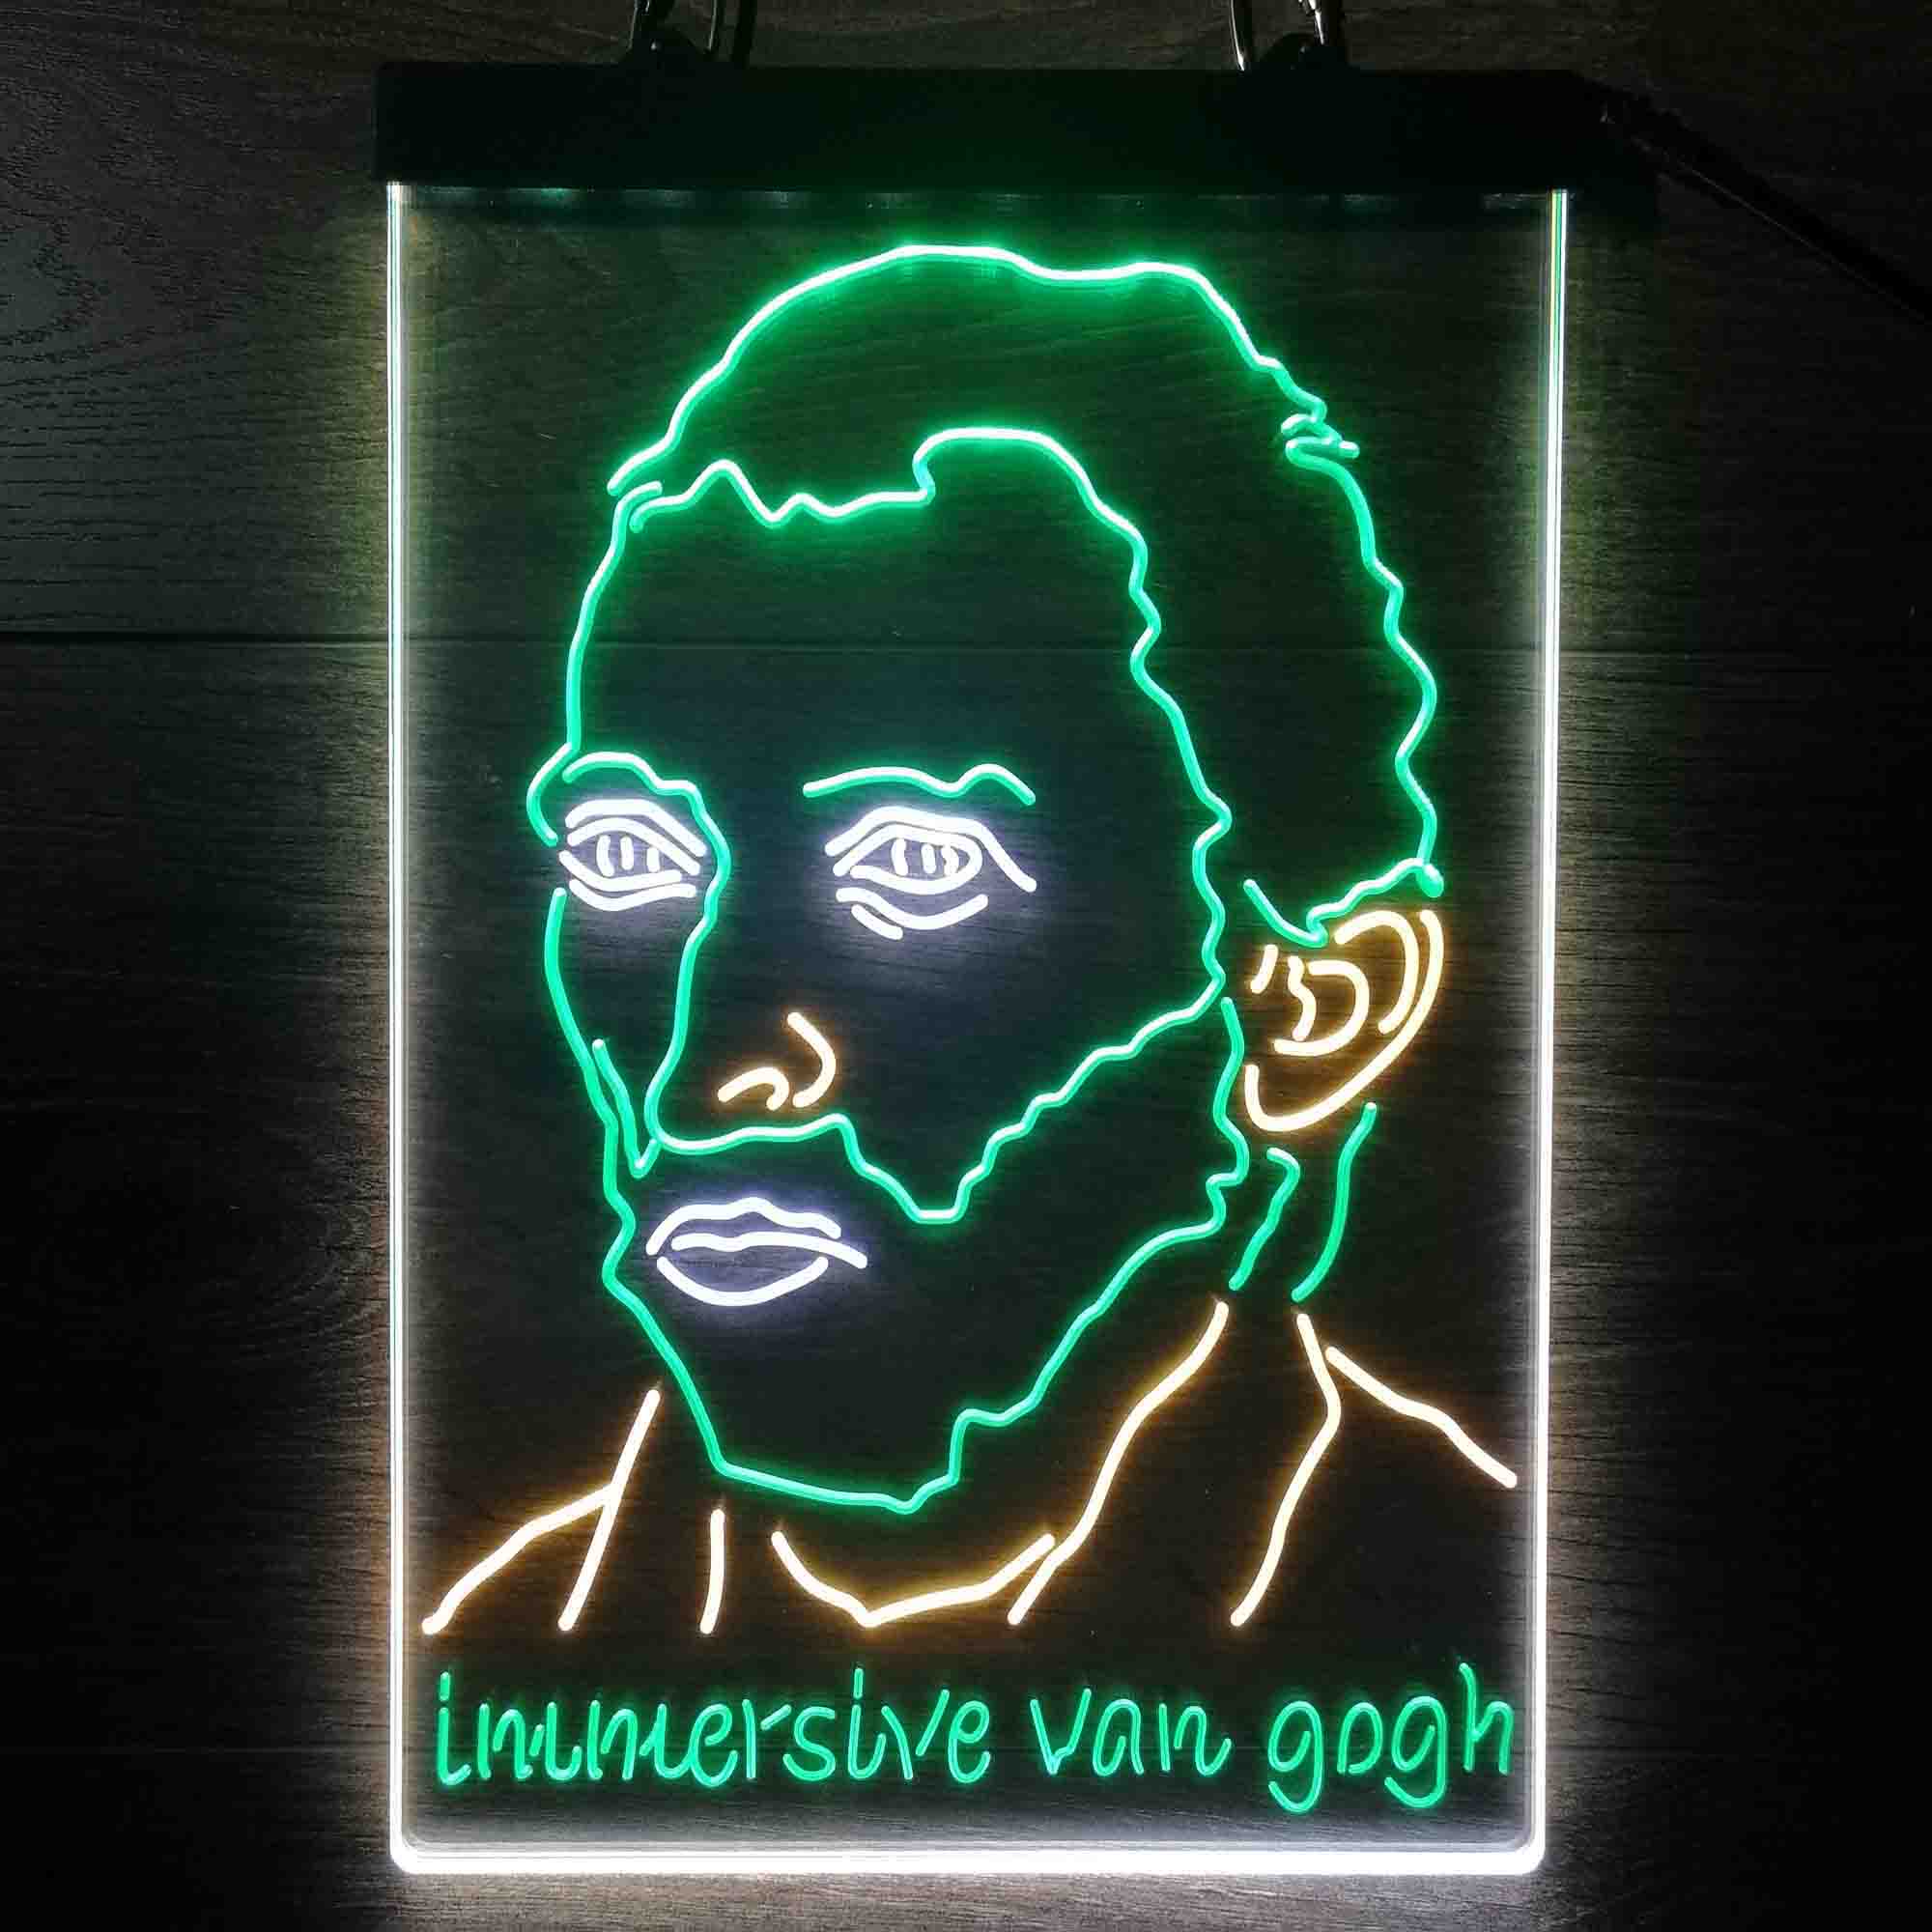 Van Gogh Self Portrait Neon LED Sign 3 Colors